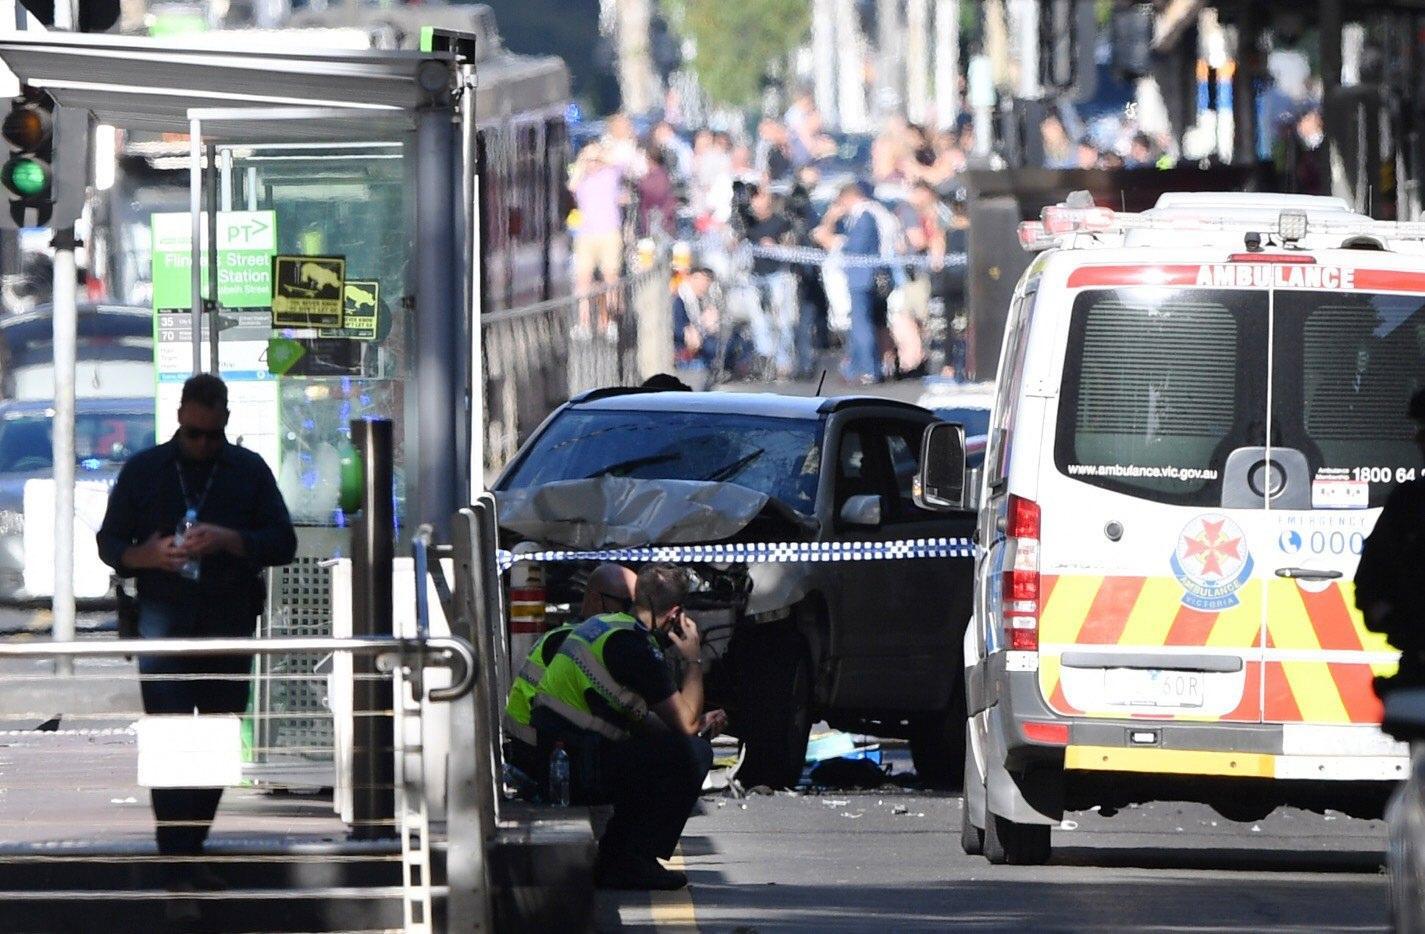 Attentato a Melbourne, auto sui passanti: almeno 19 feriti e due arresti